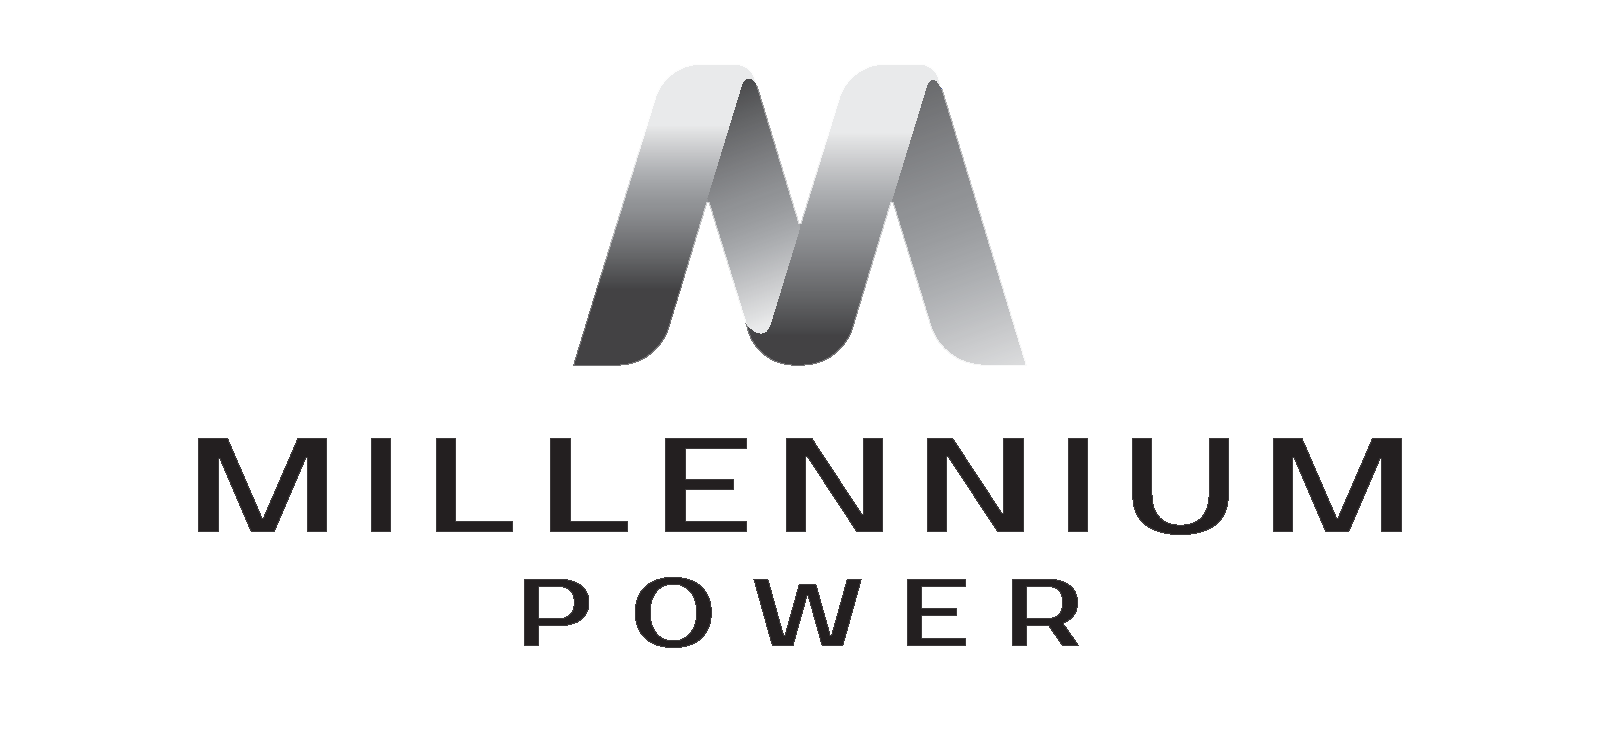 , Millennium Power Announces Acquisition of Gibbons Creek Power Facility